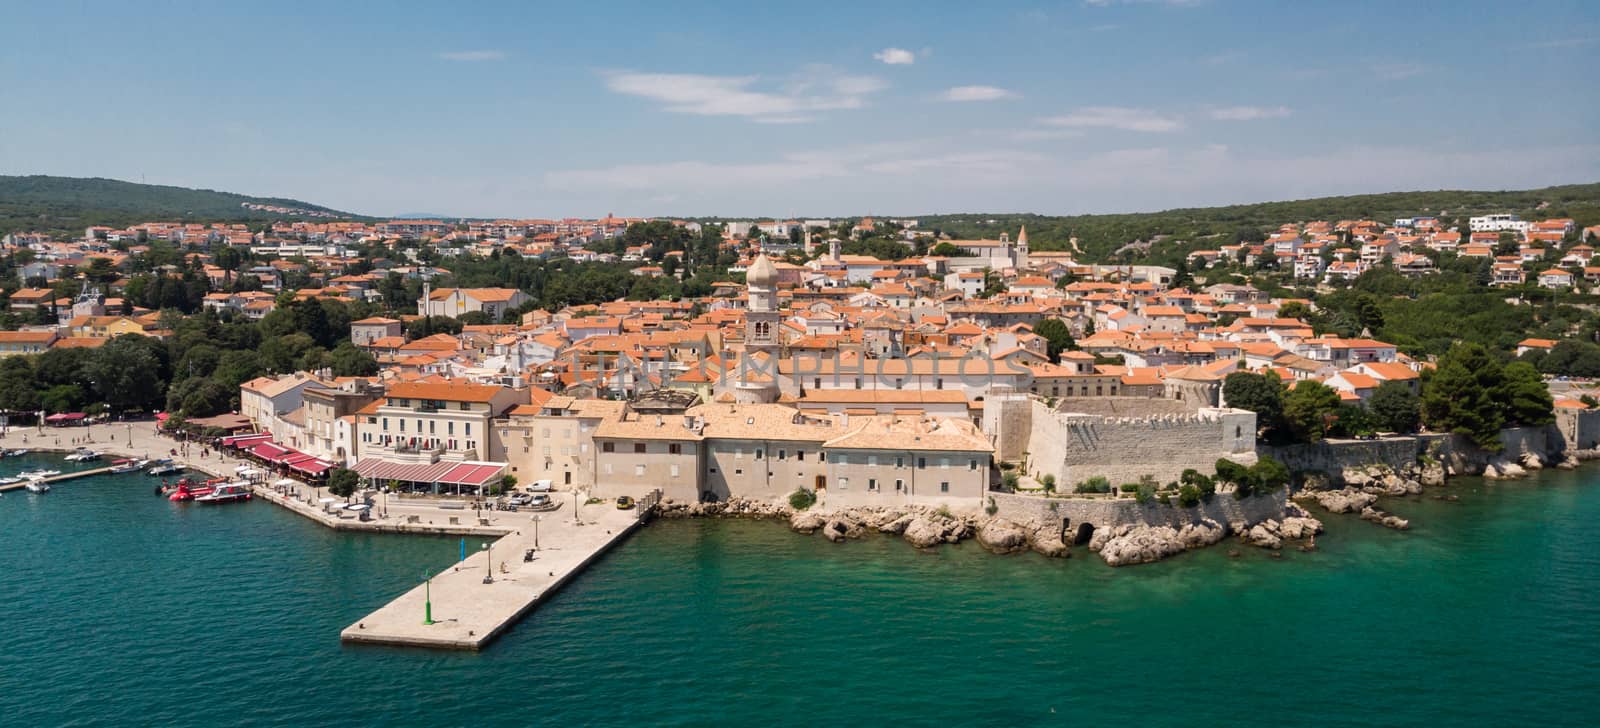 Aerial view of mediterranean coastal old town Krk, Island Krk, Croatia, EU.